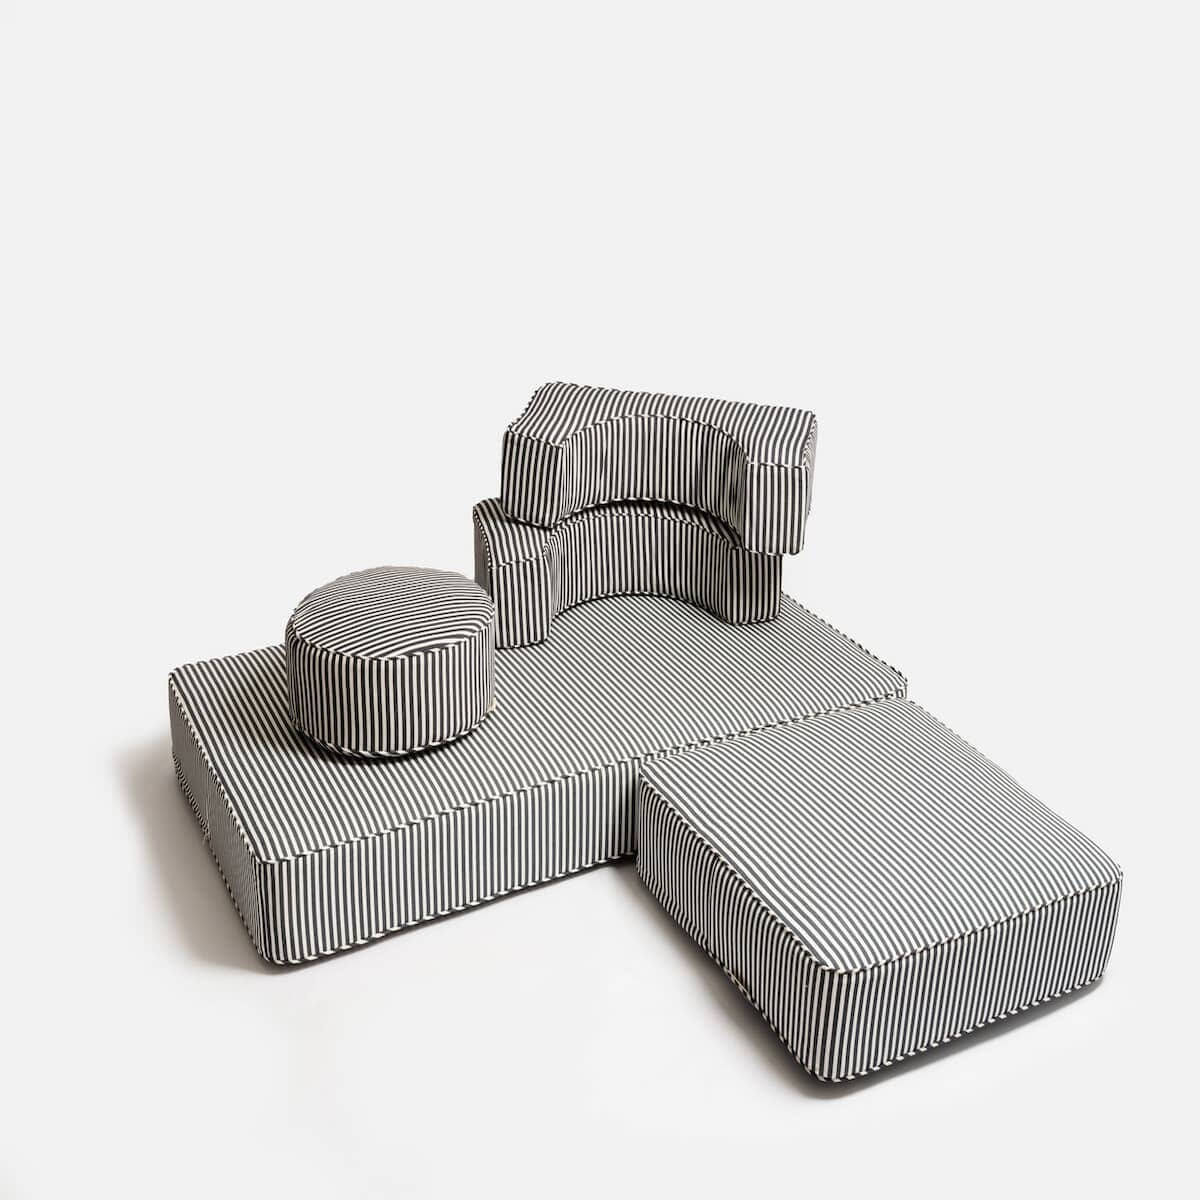 studio image of pillow stack in different arrangement